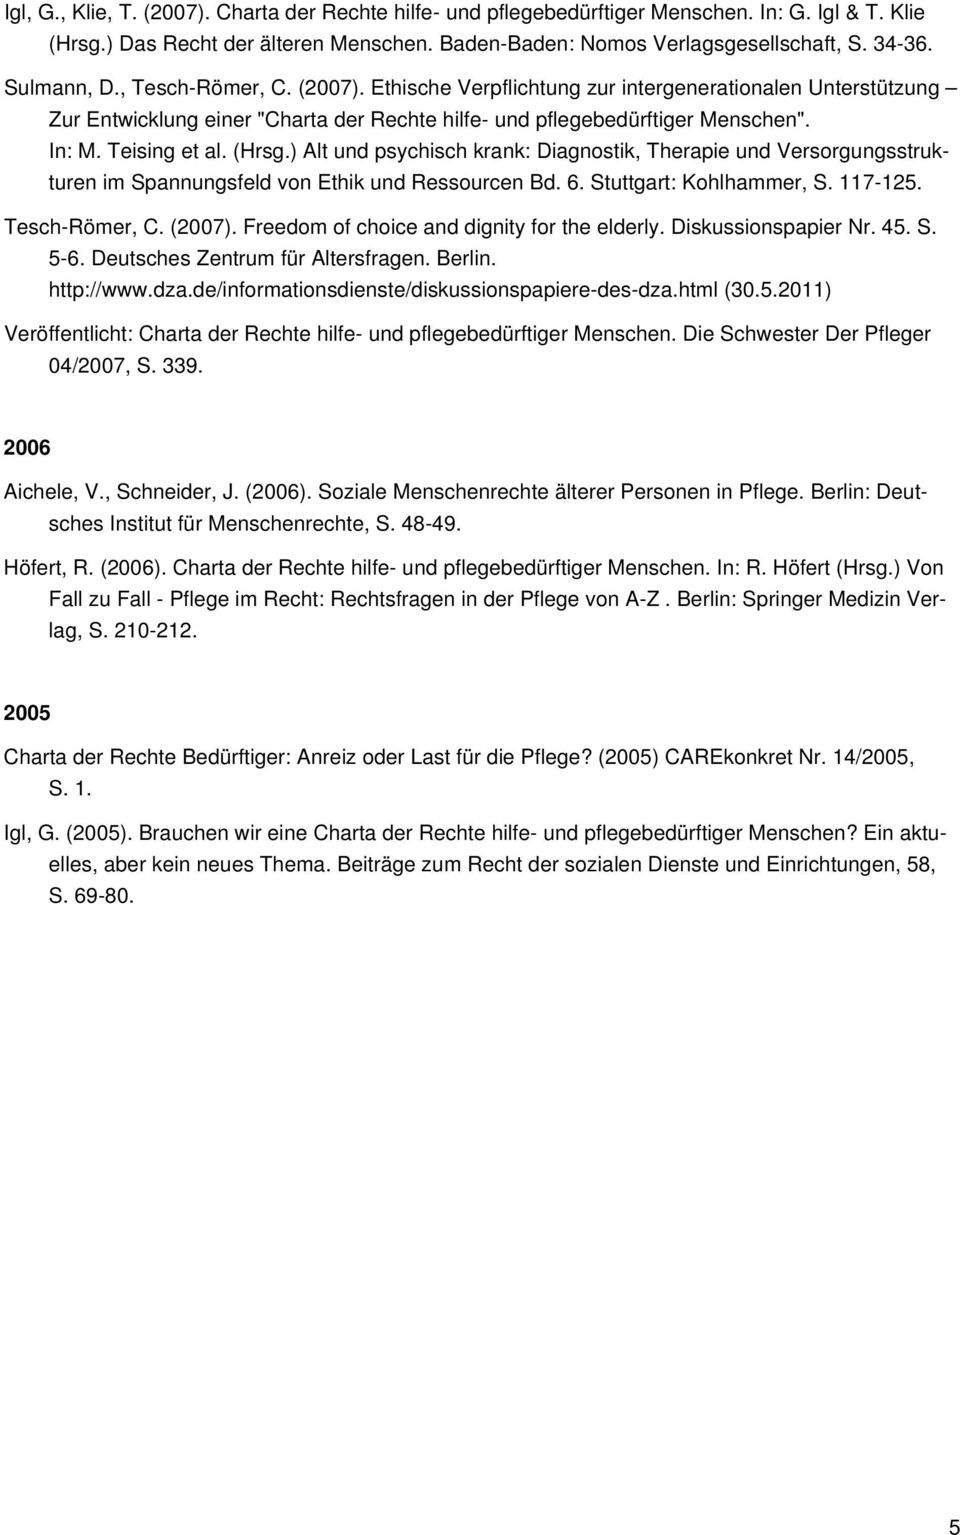 (Hrsg.) Alt und psychisch krank: Diagnostik, Therapie und Versorgungsstrukturen im Spannungsfeld von Ethik und Ressourcen Bd. 6. Stuttgart: Kohlhammer, S. 117-125. Tesch-Römer, C. (2007).